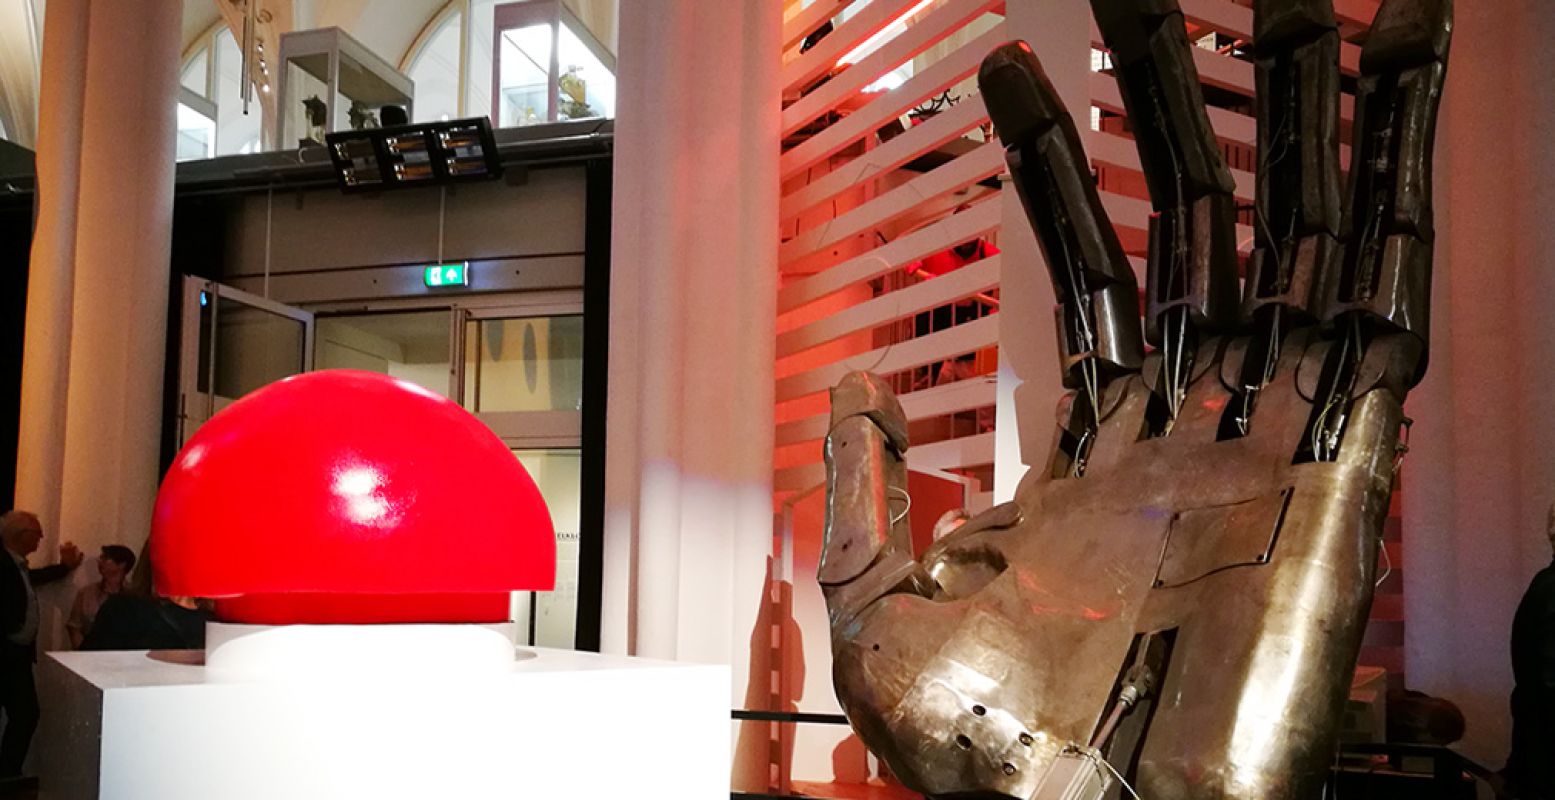 Deze gigantische mechanische hand van vier meter hoog opende met een druk op de knop de tentoonstelling in Museum Speelklok. Foto: DagjeWeg.NL.